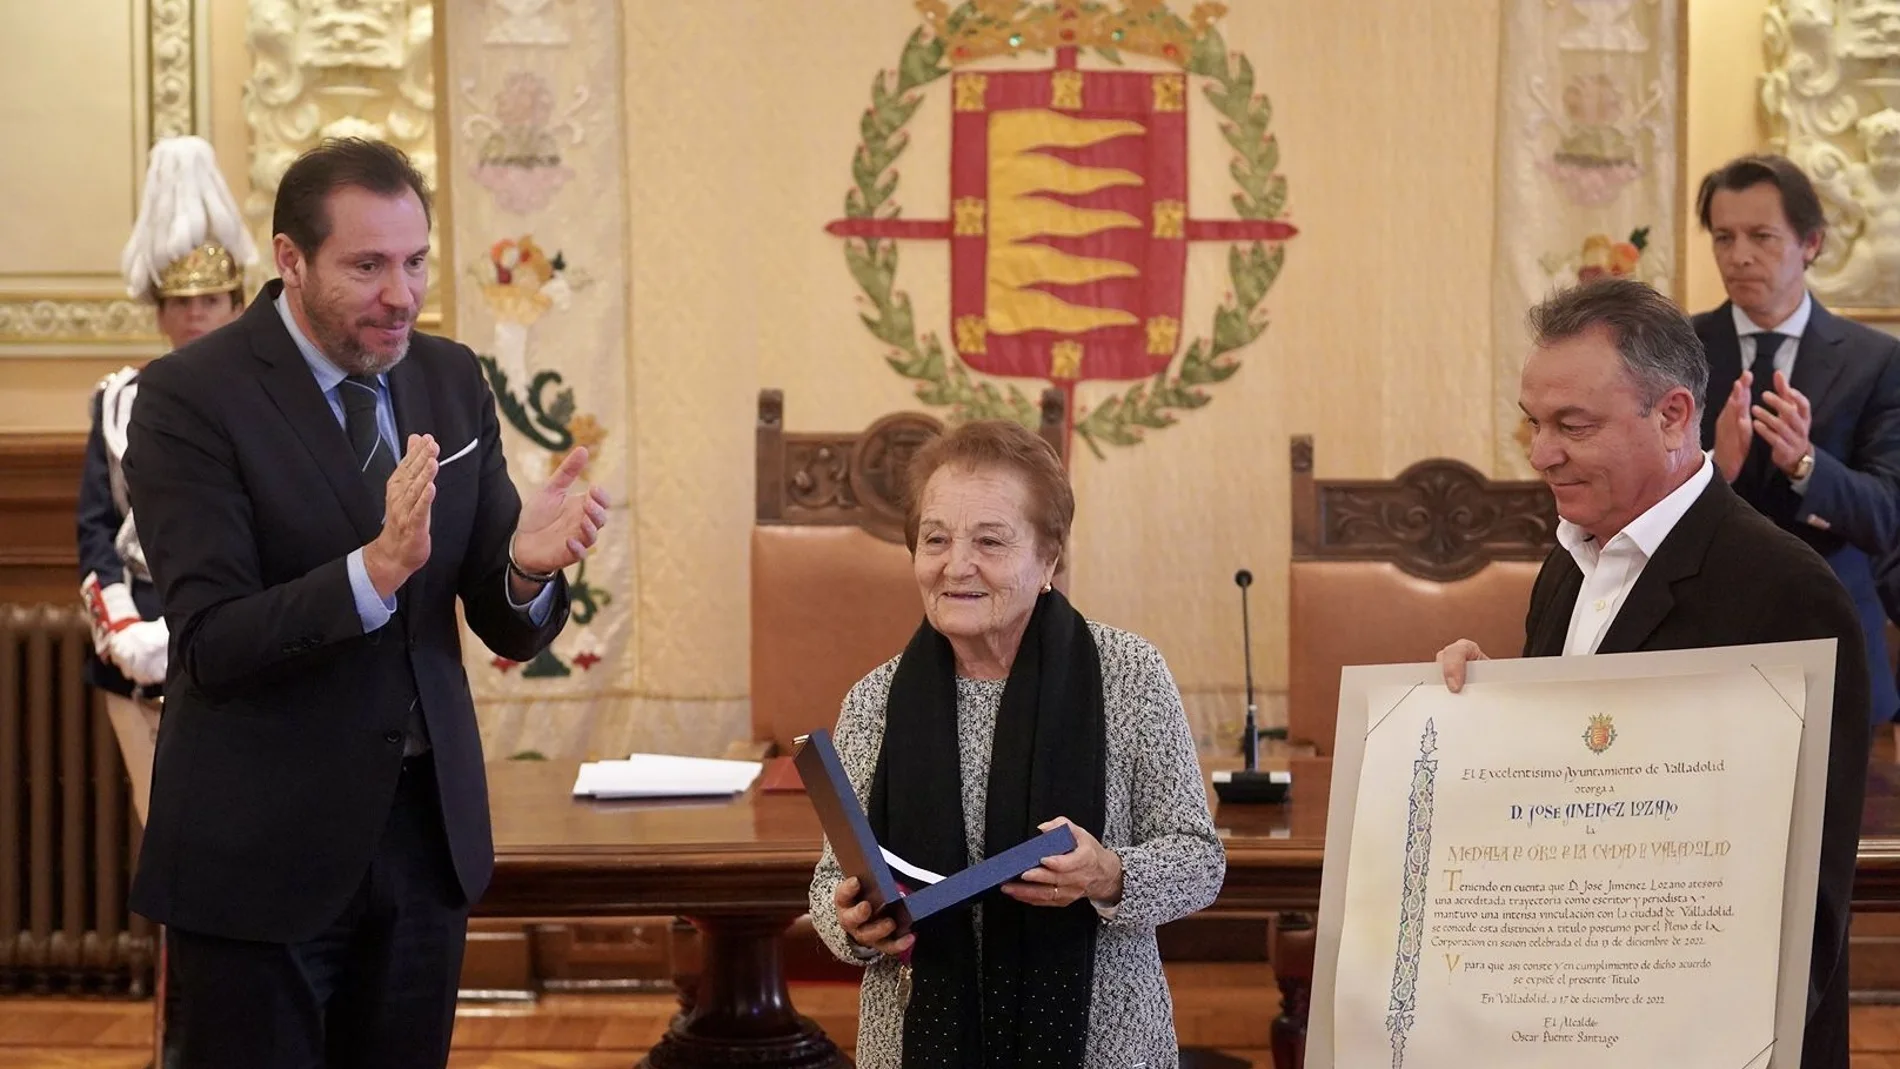 La viuda de Jiménez Lozano, Dora Vicente, y uno de sus hijos, Ángel, recogen la Medalla de Oro de Valladolid a título póstumo para el universal escritor